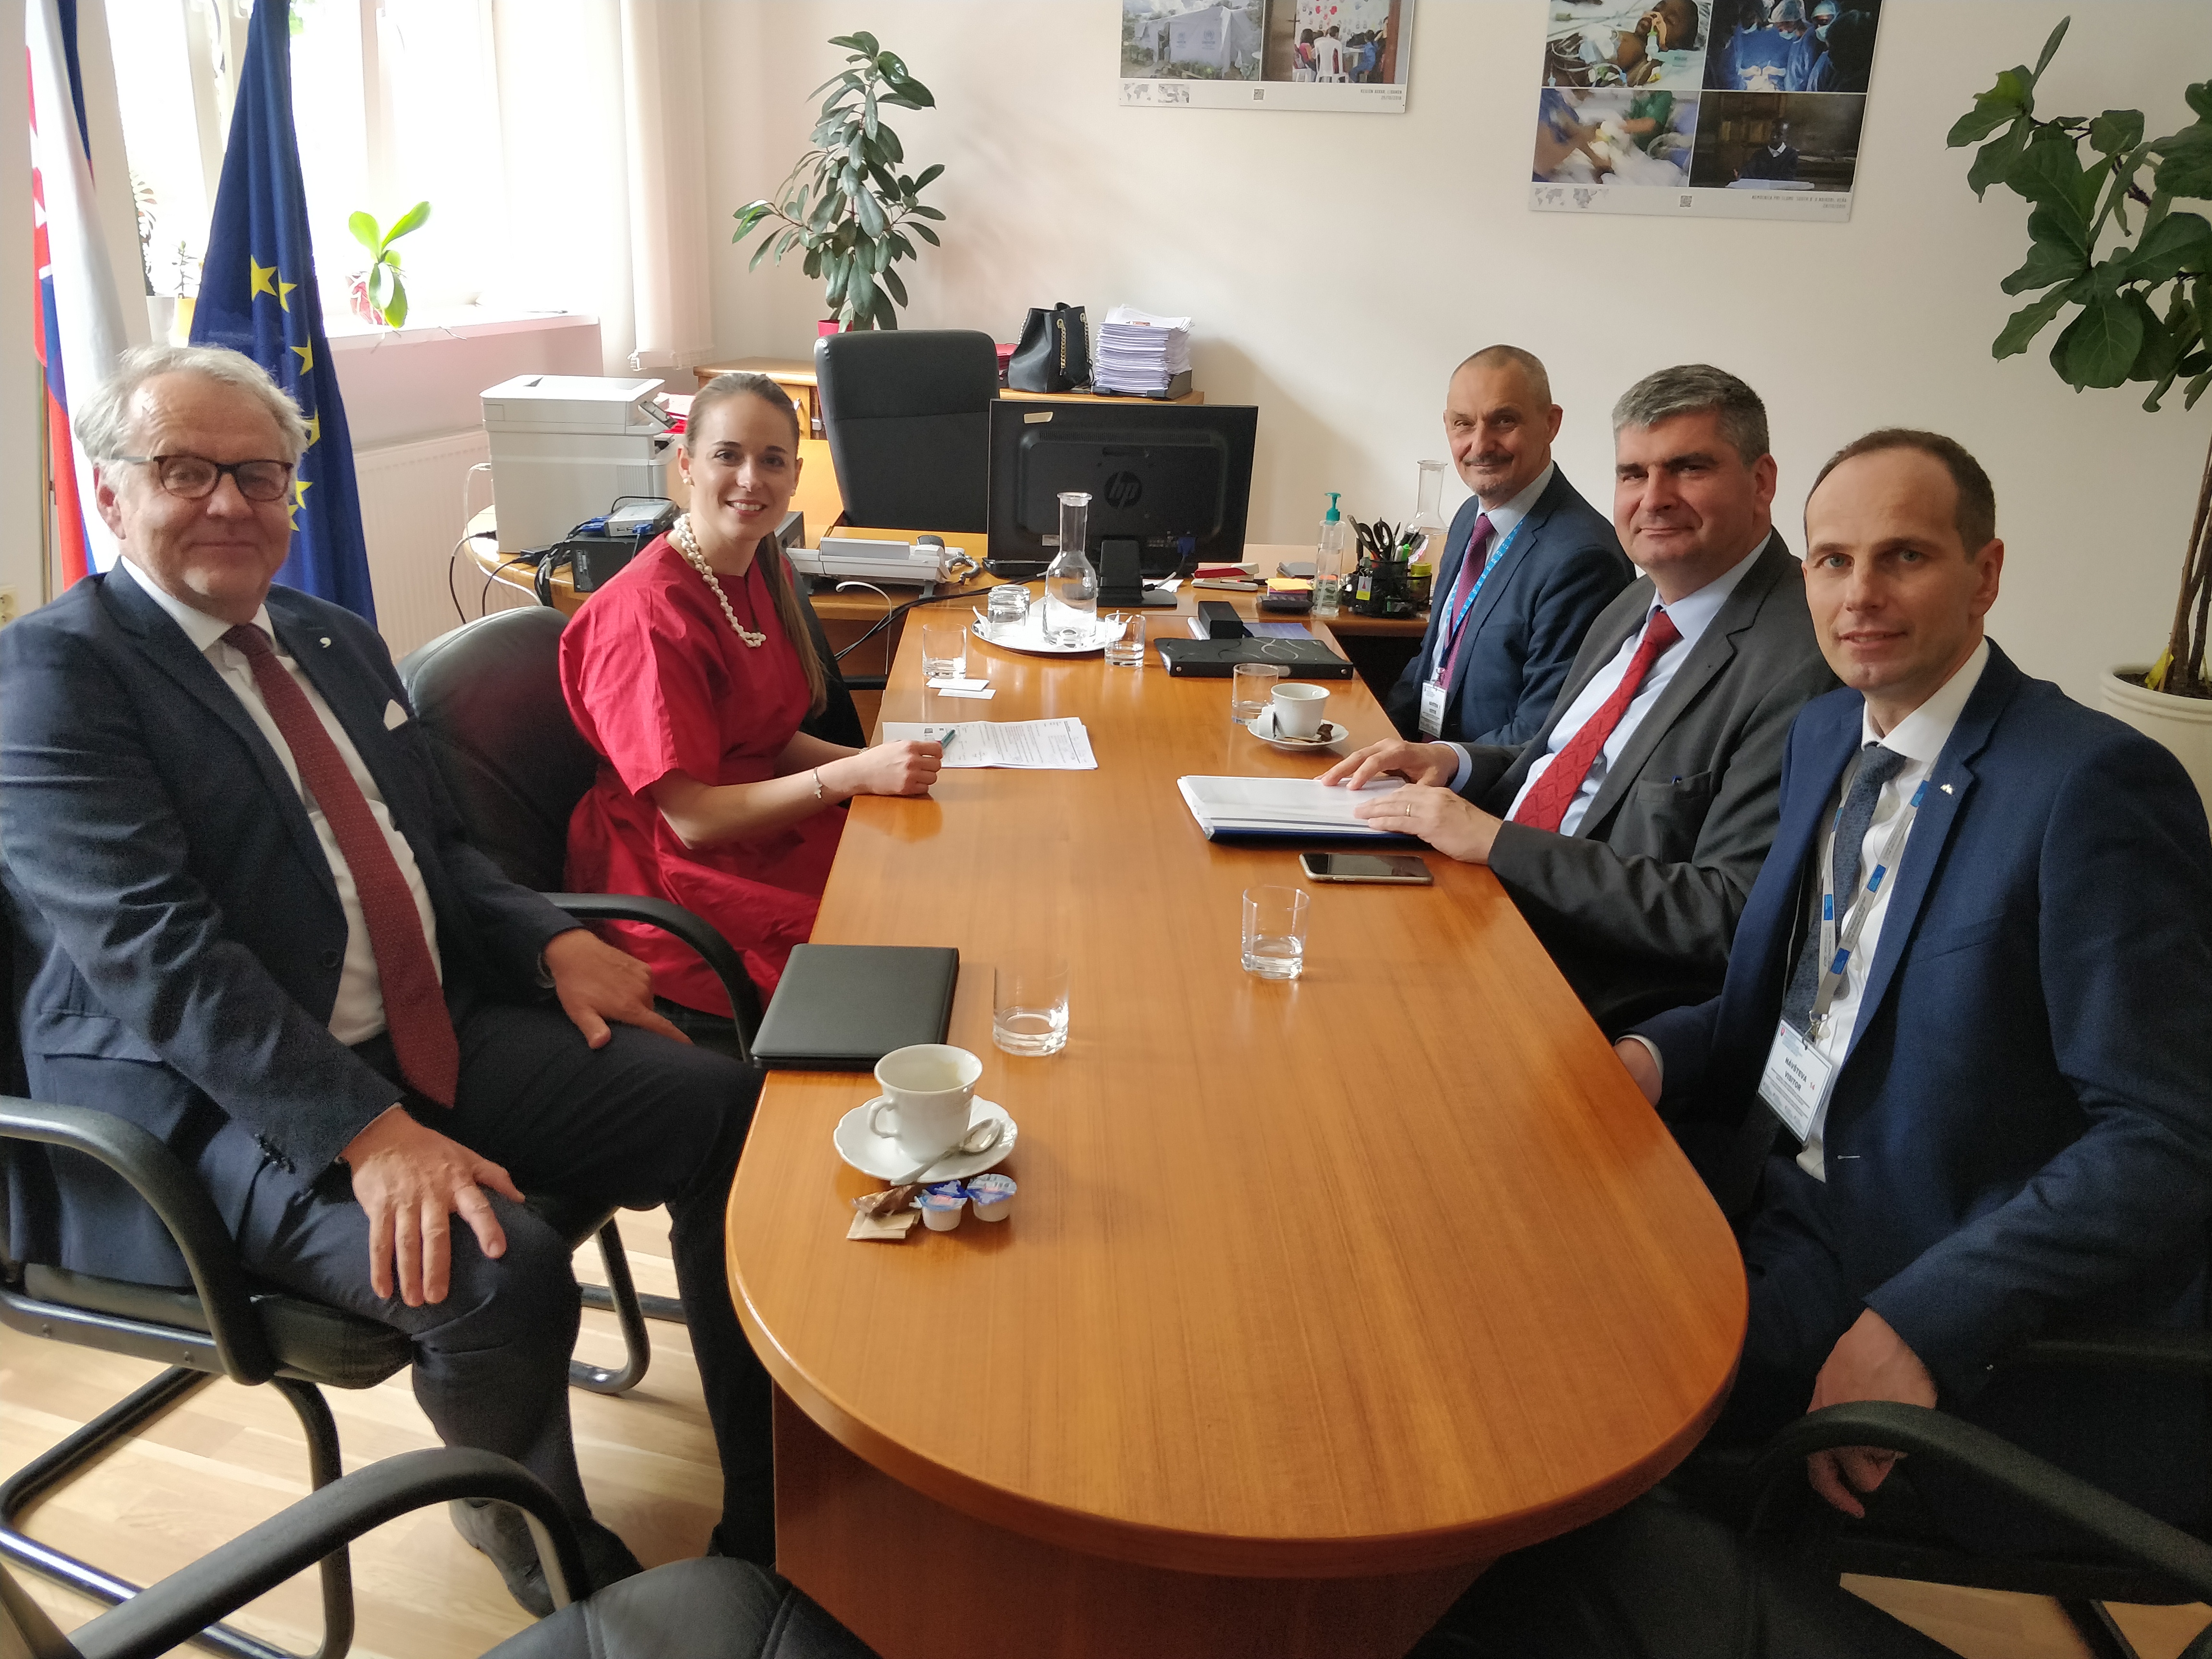 Štátny tajomník Dr. Rosen počas pracovnej návštevy Bratislavy s cieľom prediskutovať možnosti zlepšenia hospodárskej spolupráce